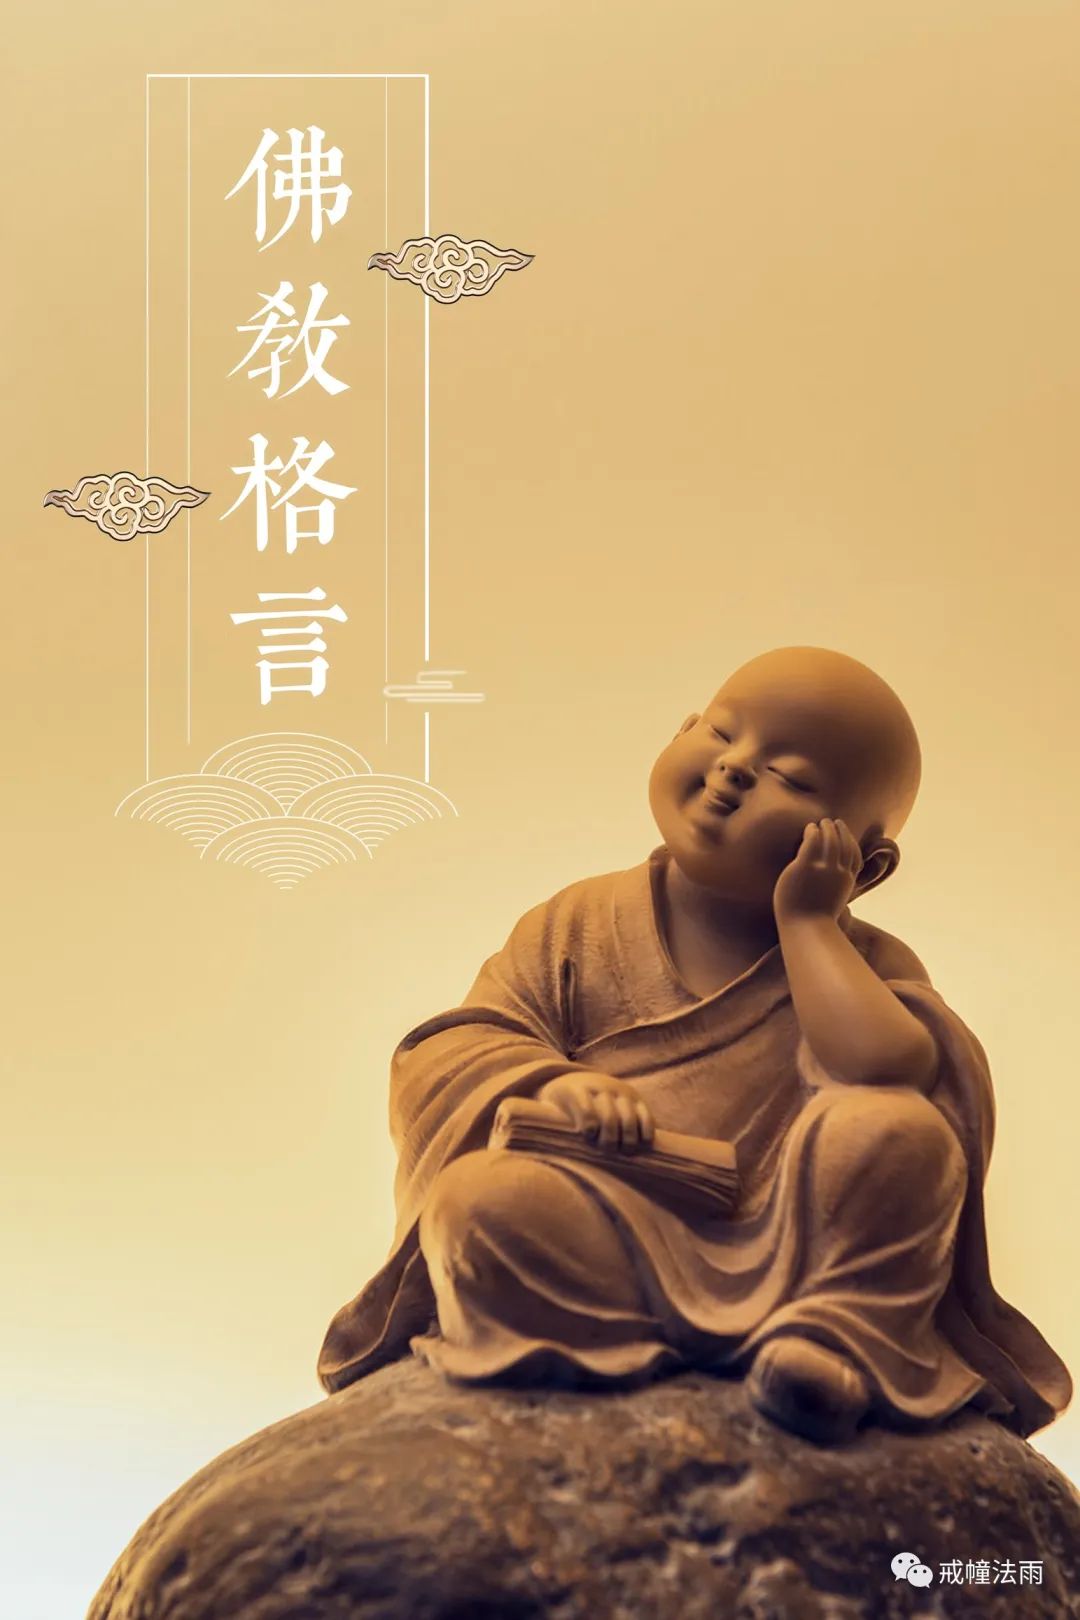 佛教的智慧是一种具有启迪和指导意义的生命智慧